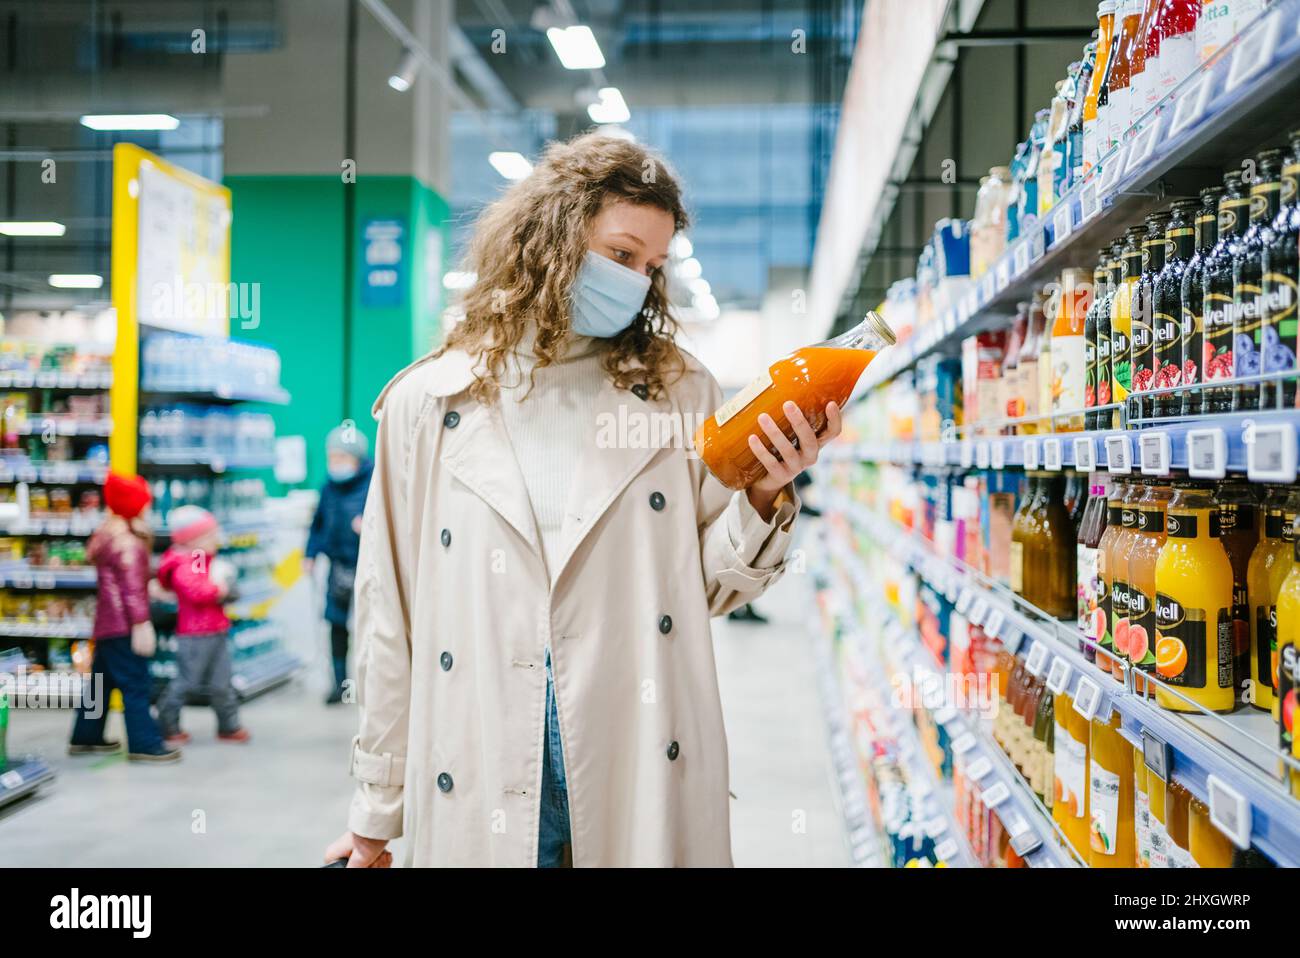 Una mujer rizado joven con una máscara médica y un impermeable beige elige el jugo en una botella de vidrio en un supermercado Foto de stock